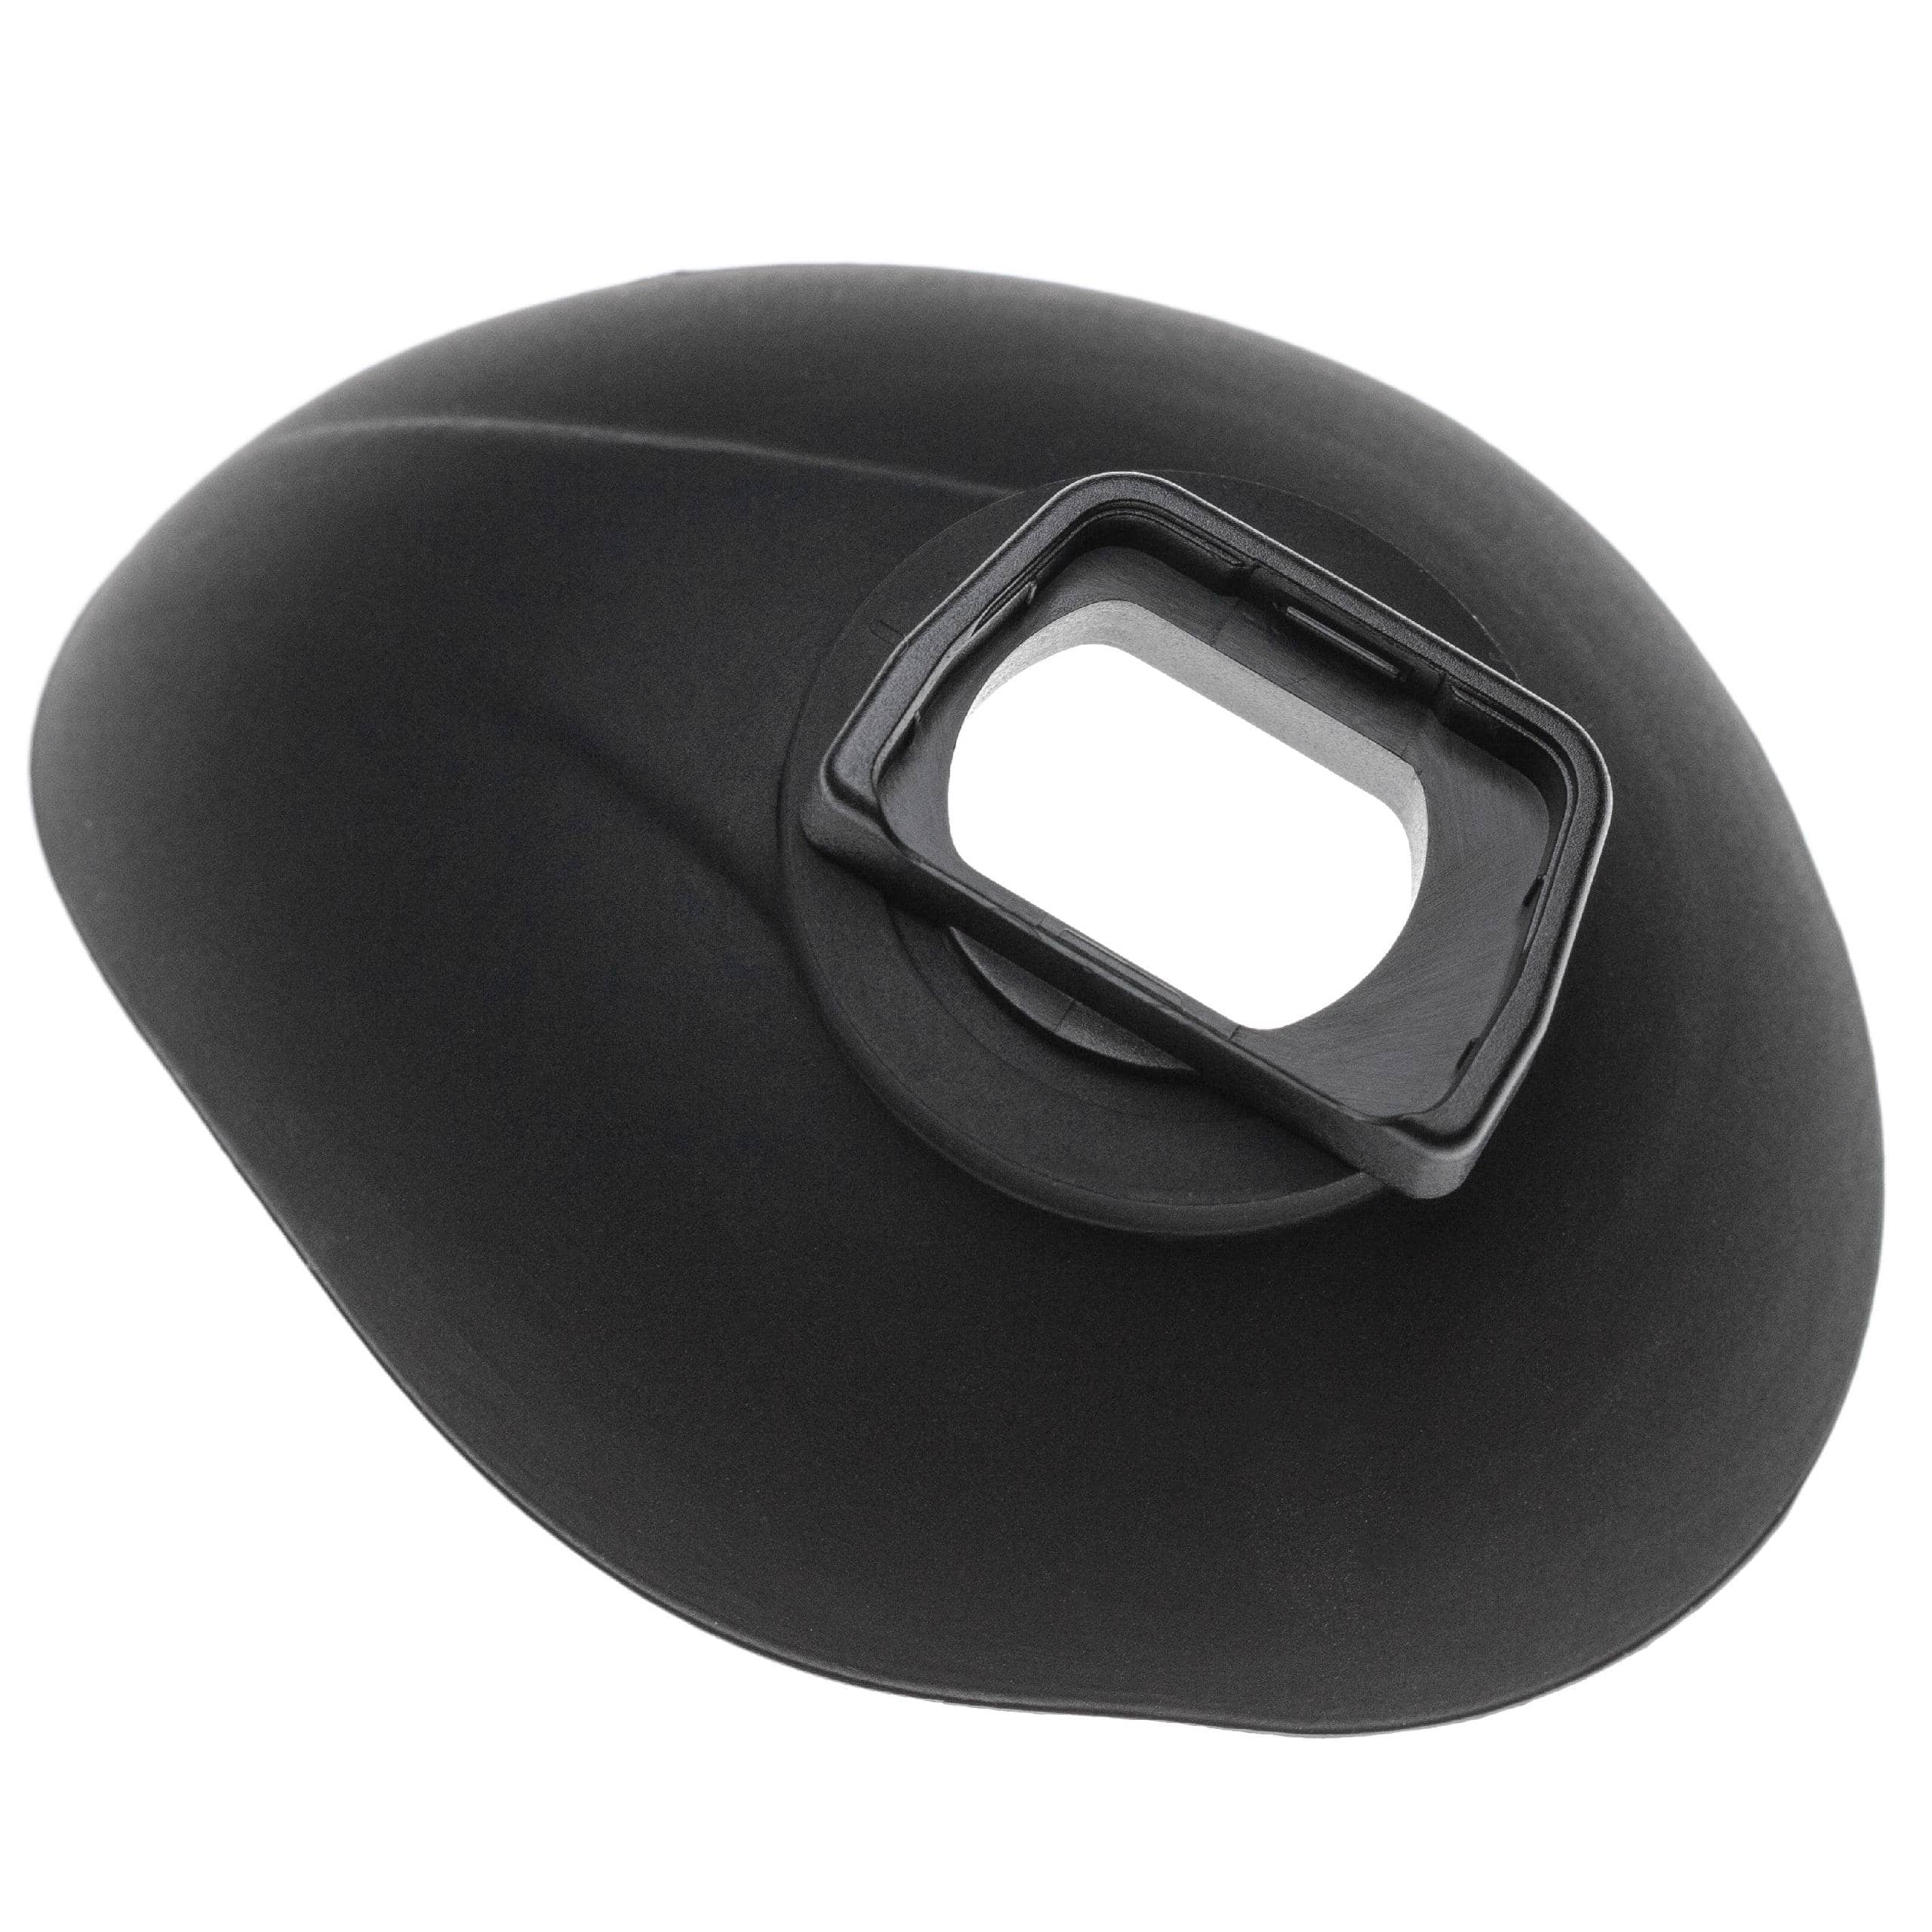 Augenmuschel Sucher als Ersatz für Sony FDA-EP10 für Sony A6000 u.a., 360° drehbar, Kunststoff, Gummi